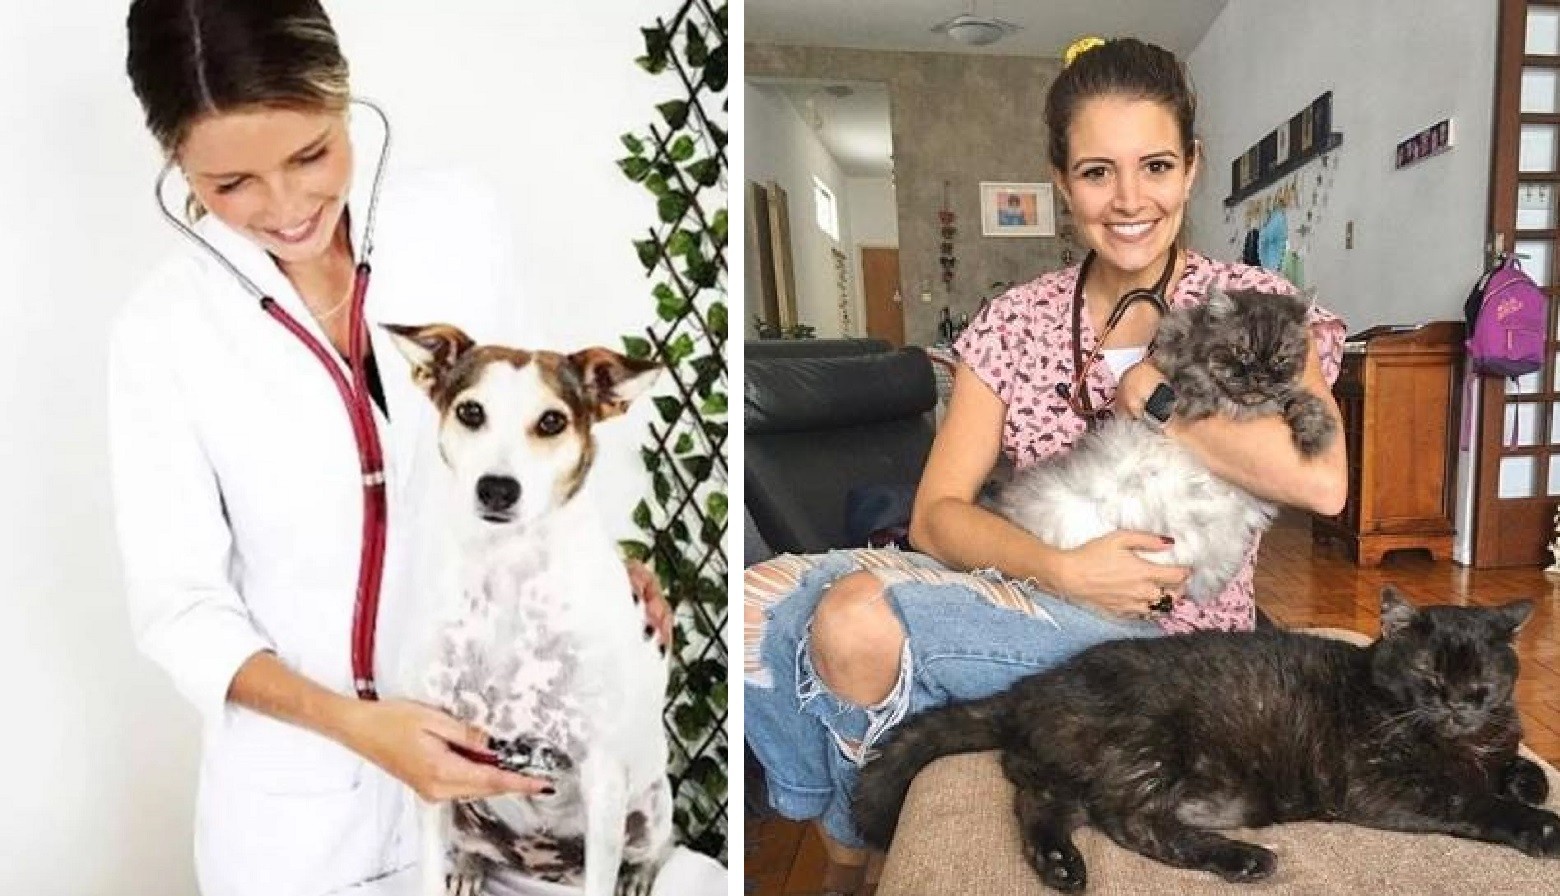 Debby e Renata Del Bianco, que trabalharam como atrizes mirins na década de 1990, são formadas e atuam como veterinárias (Foto: Reprodução/Instagram)